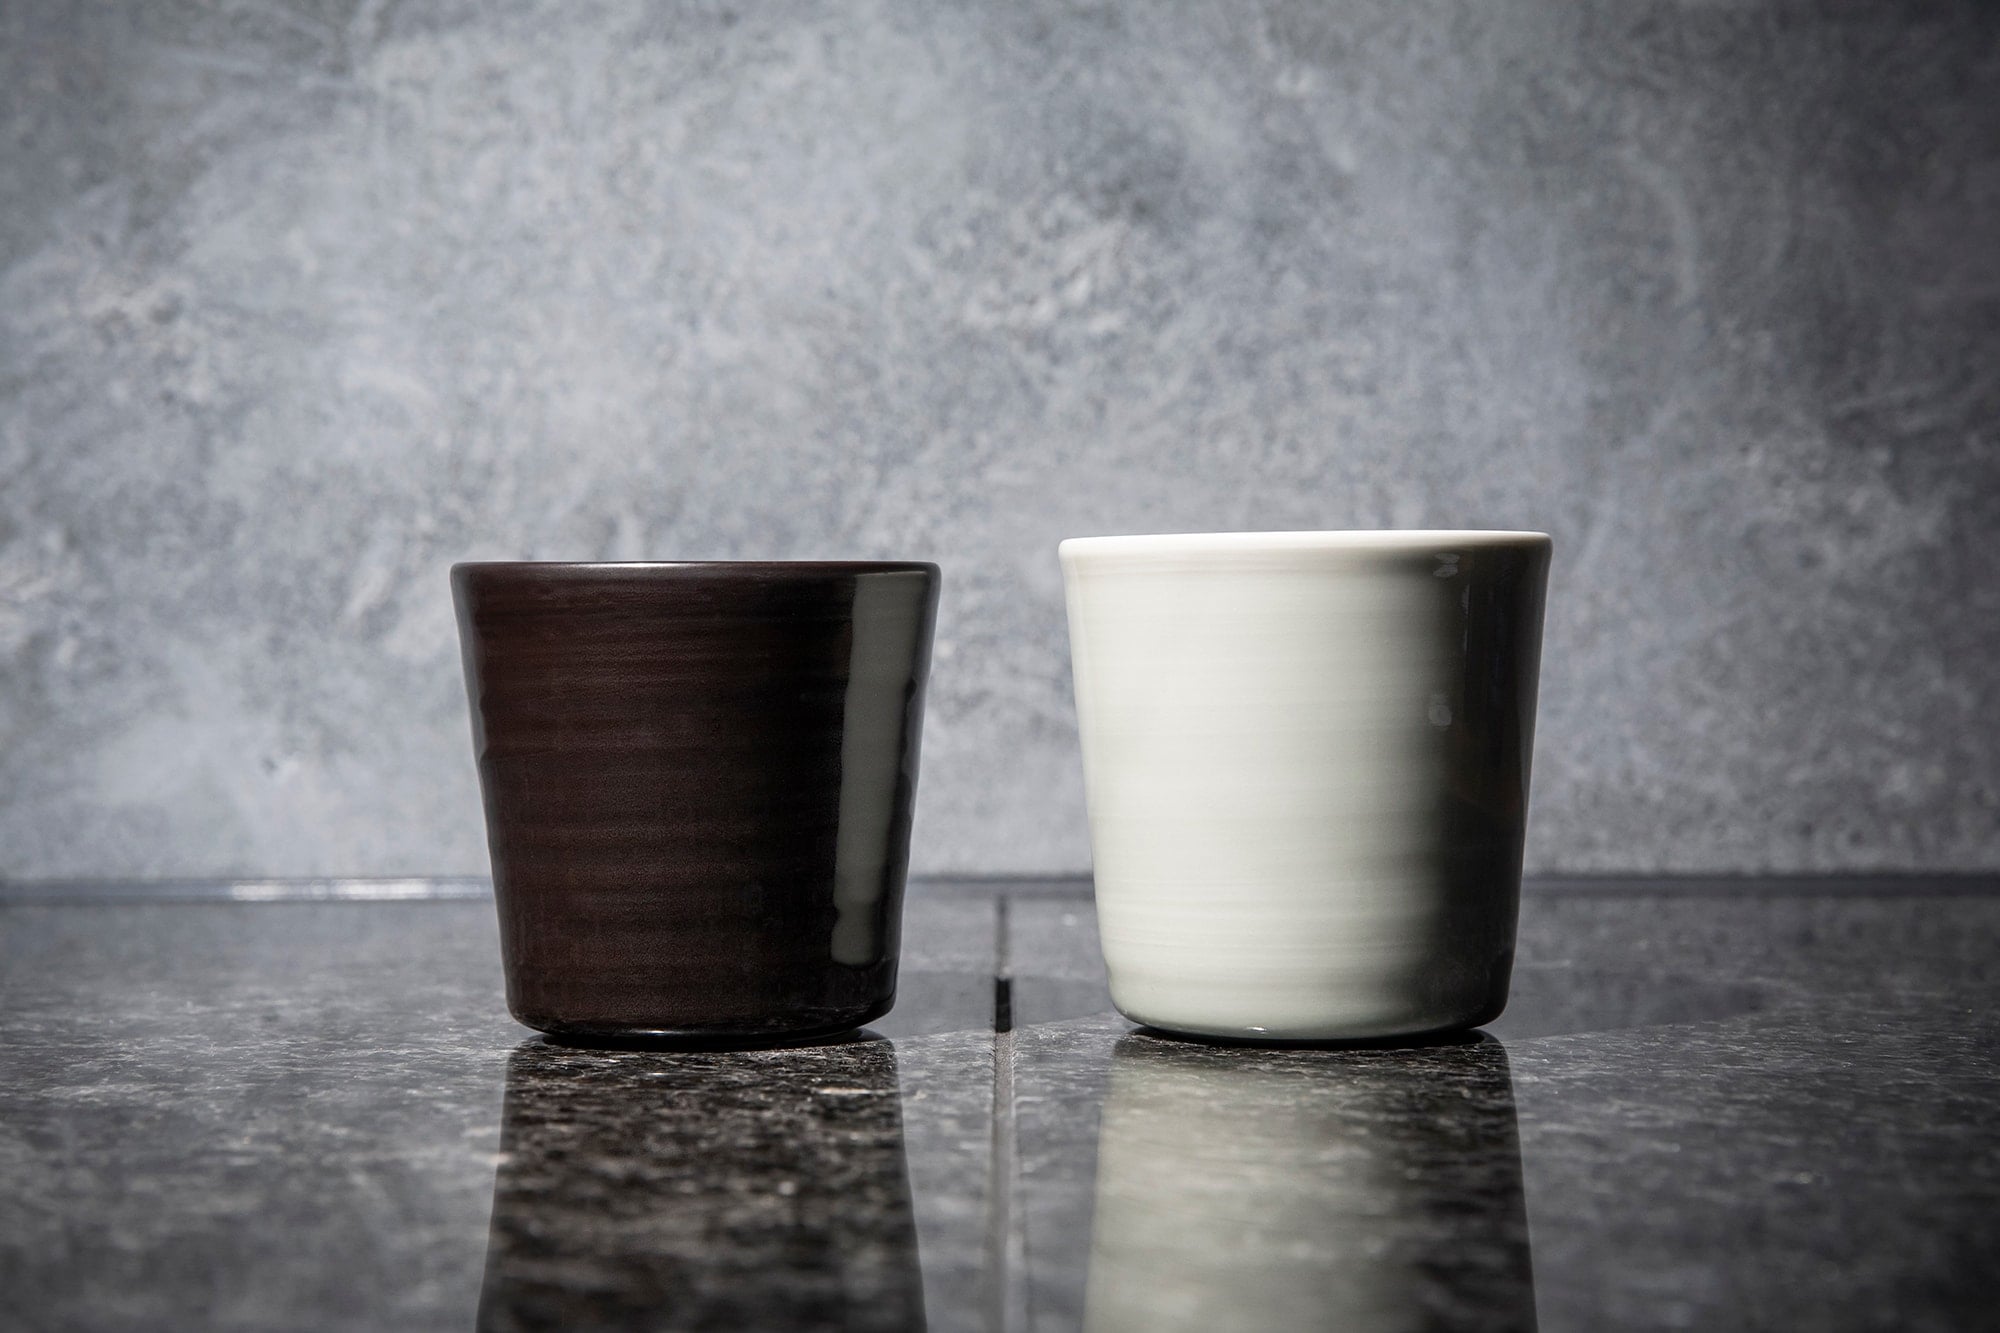 有田の香蘭社とインゲヤード・ローマンのコラボレーションによる磁器のカップ